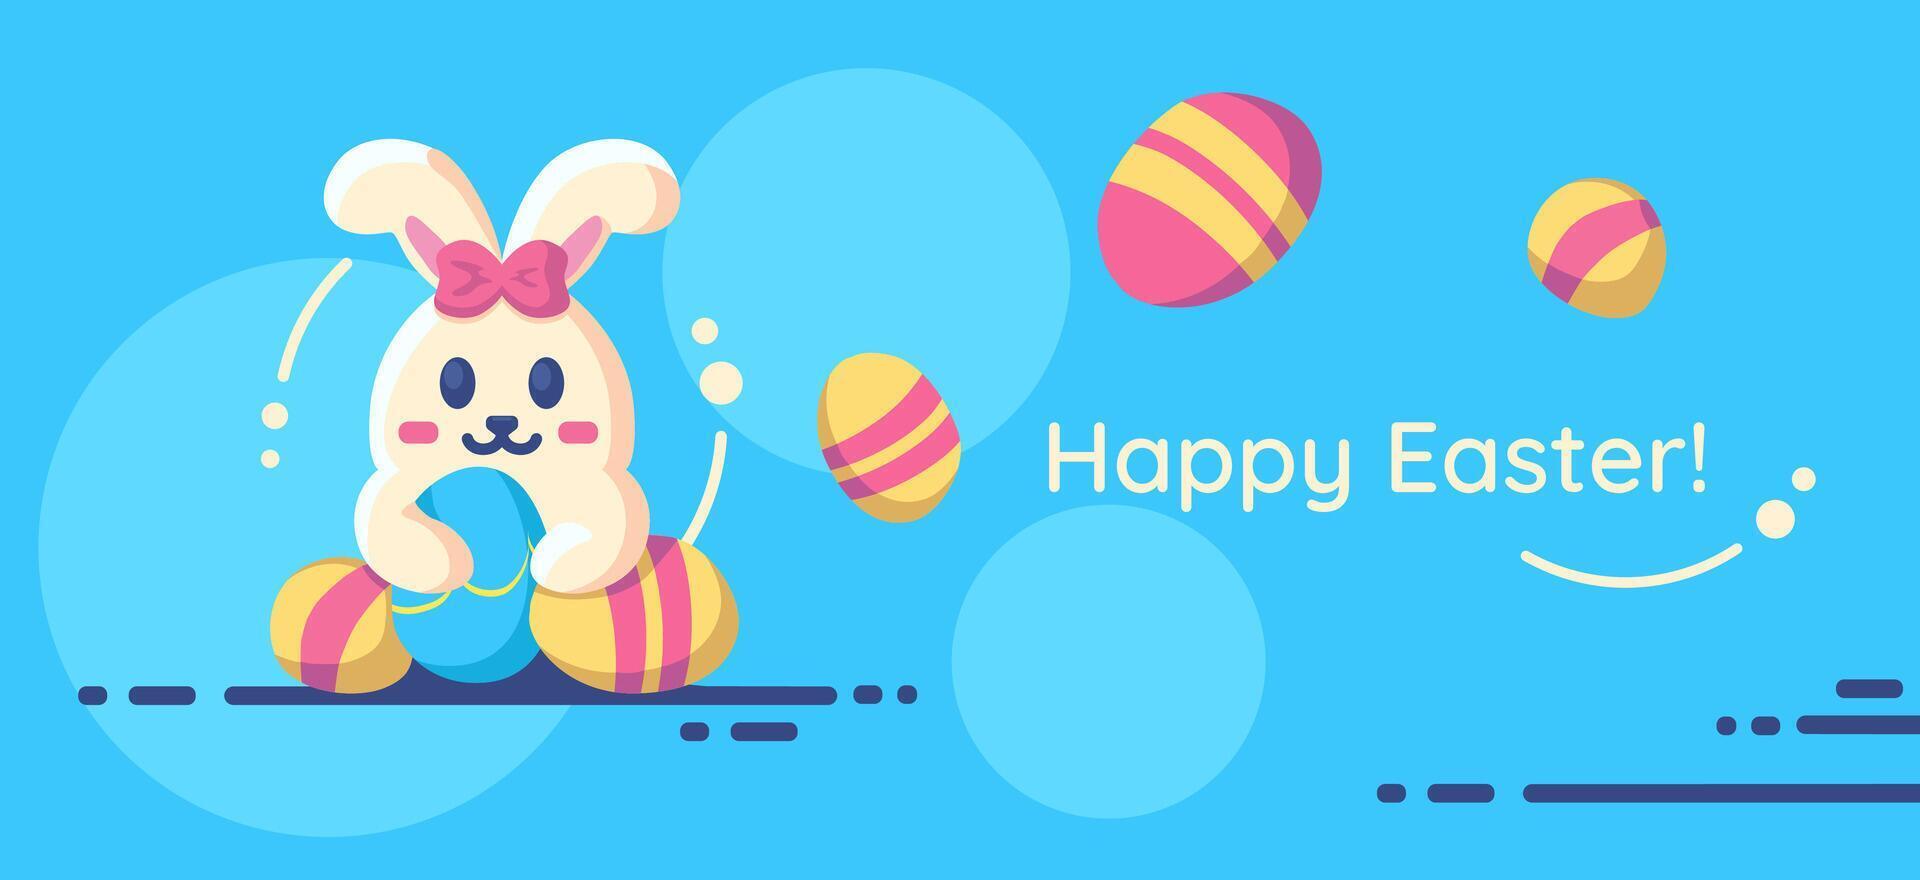 contento Pascua de Resurrección bandera con linda plano Conejo con Pascua de Resurrección huevos, invitación, saludo para un primavera día festivo. vector ilustración.